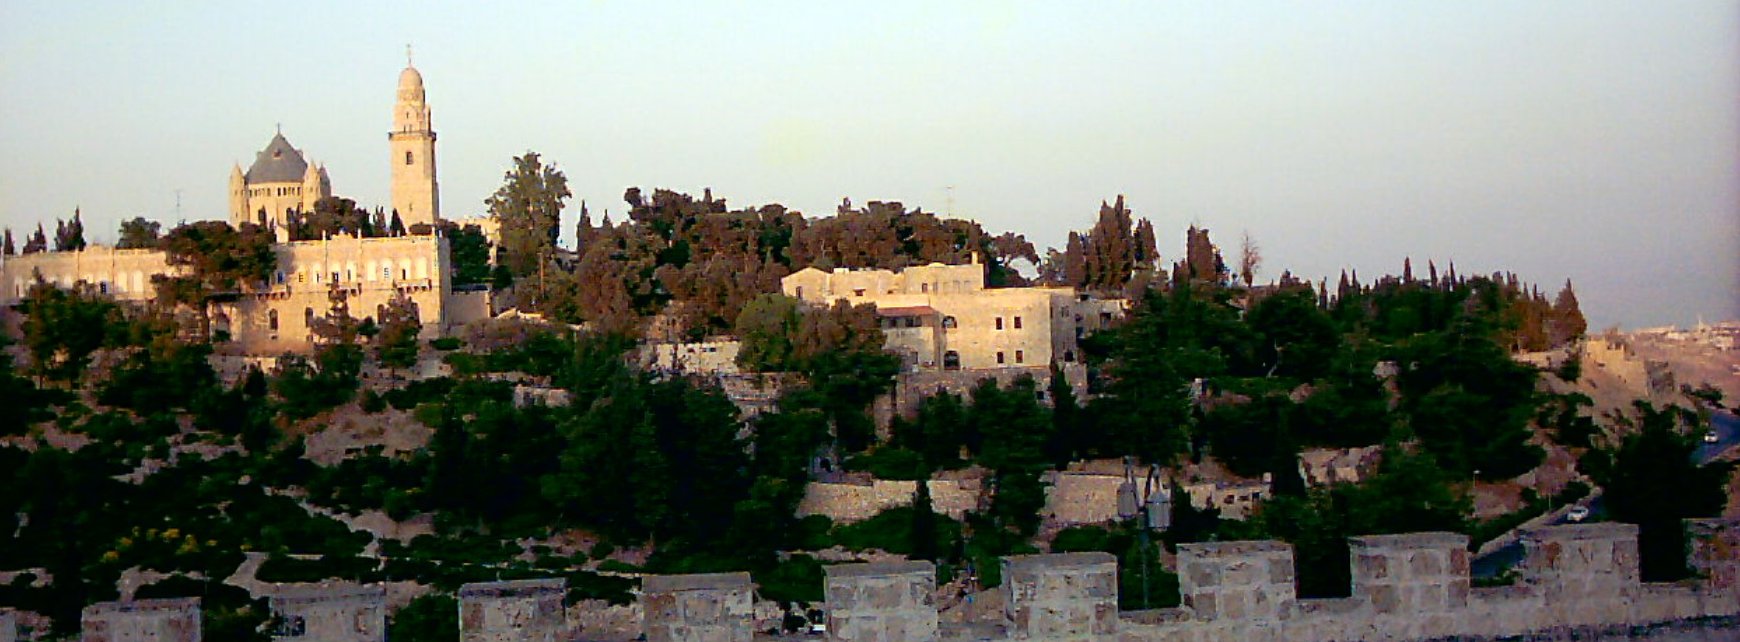 jerusalem-old-city-mount-zion-1-21-05-2003.jpg